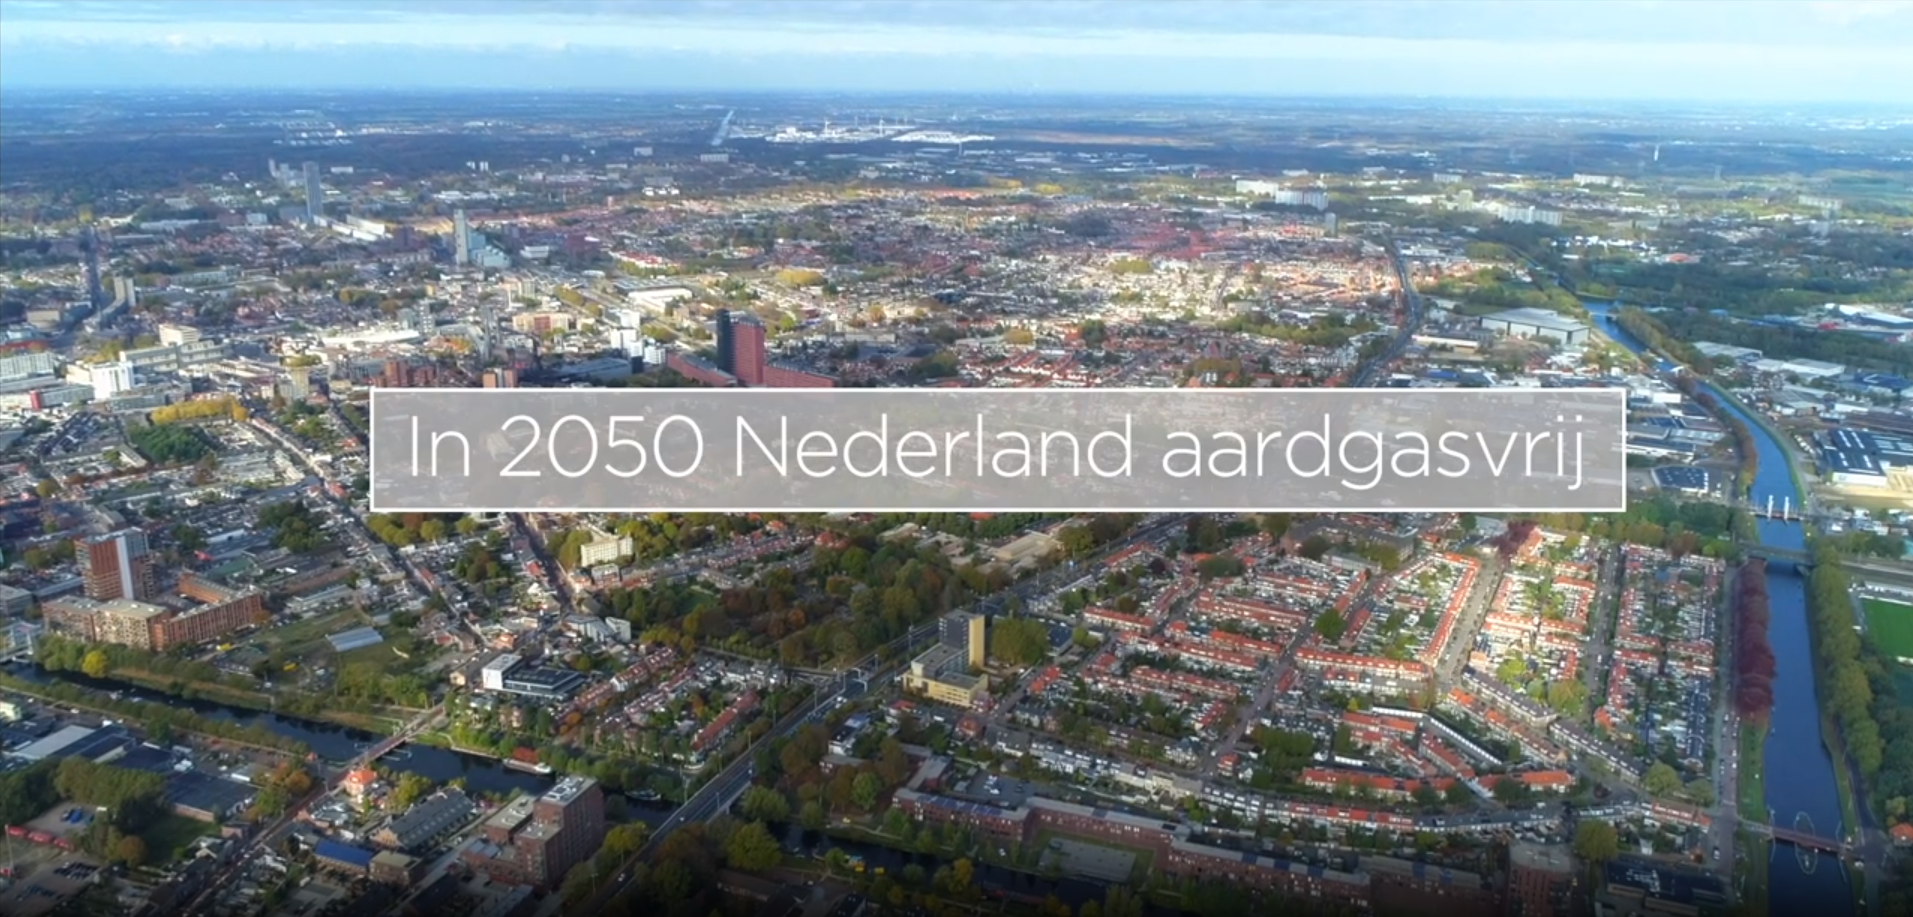 Link naar video Liander met de tekst In 2050 Nederland aardgasvrij